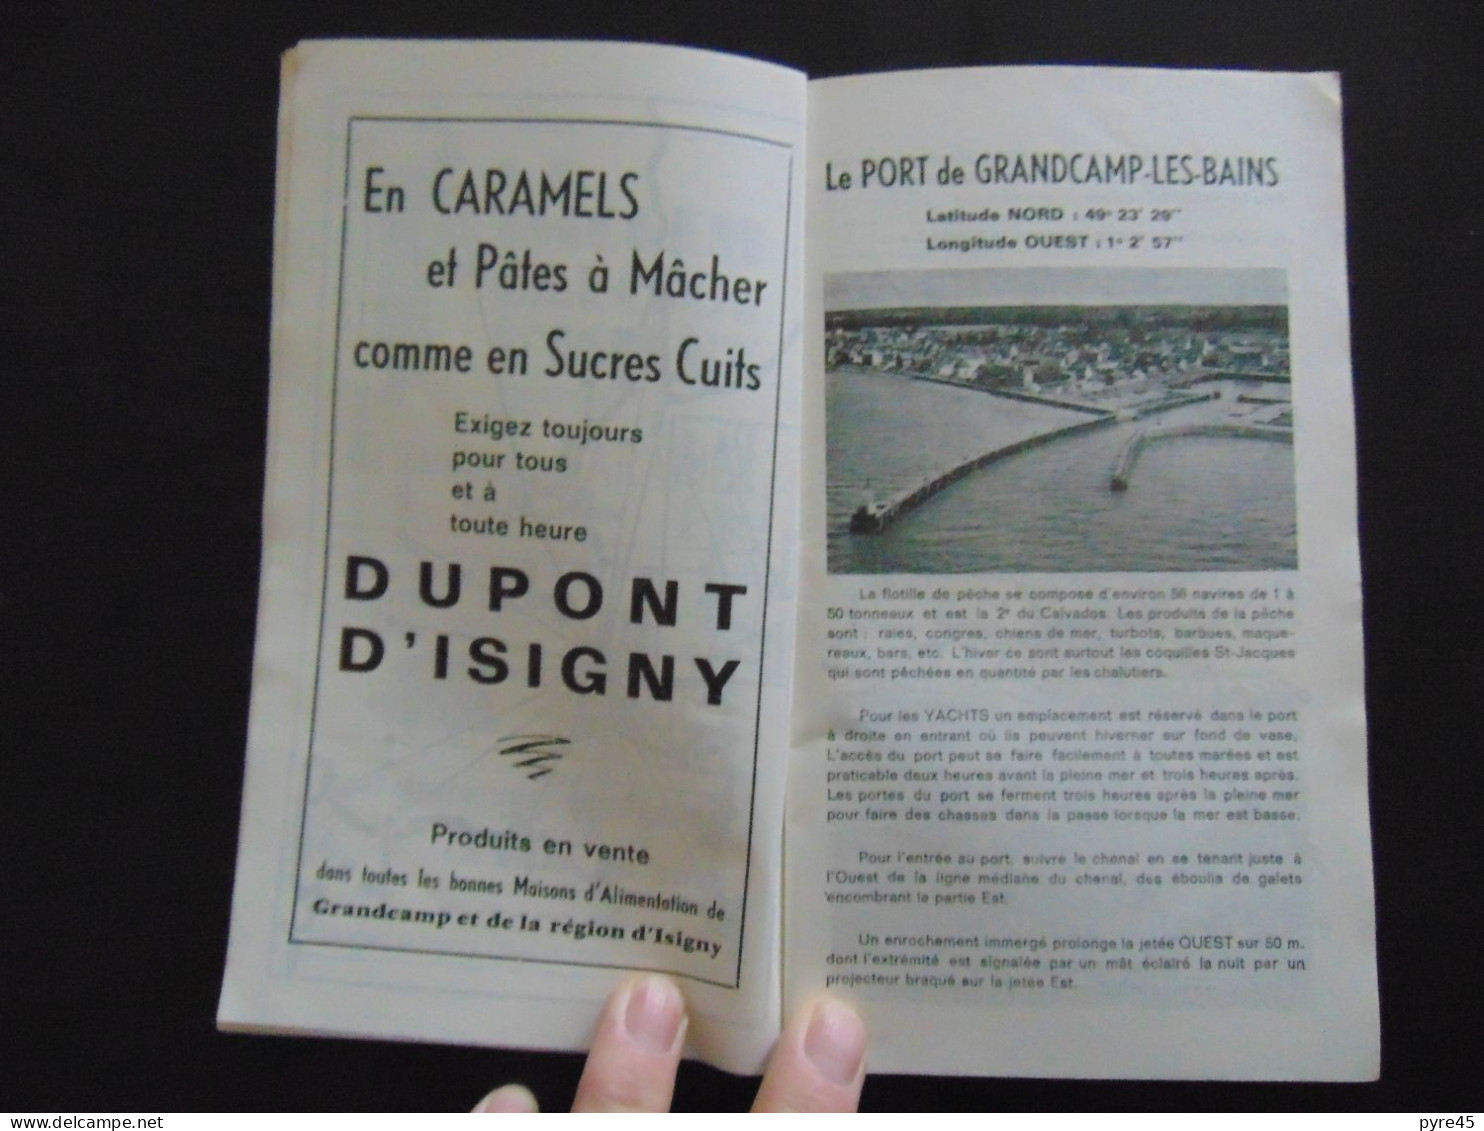 GRANDCAMP LES BAINS SAISON 1972 PROGRAMME DES FETES - Tourism Brochures